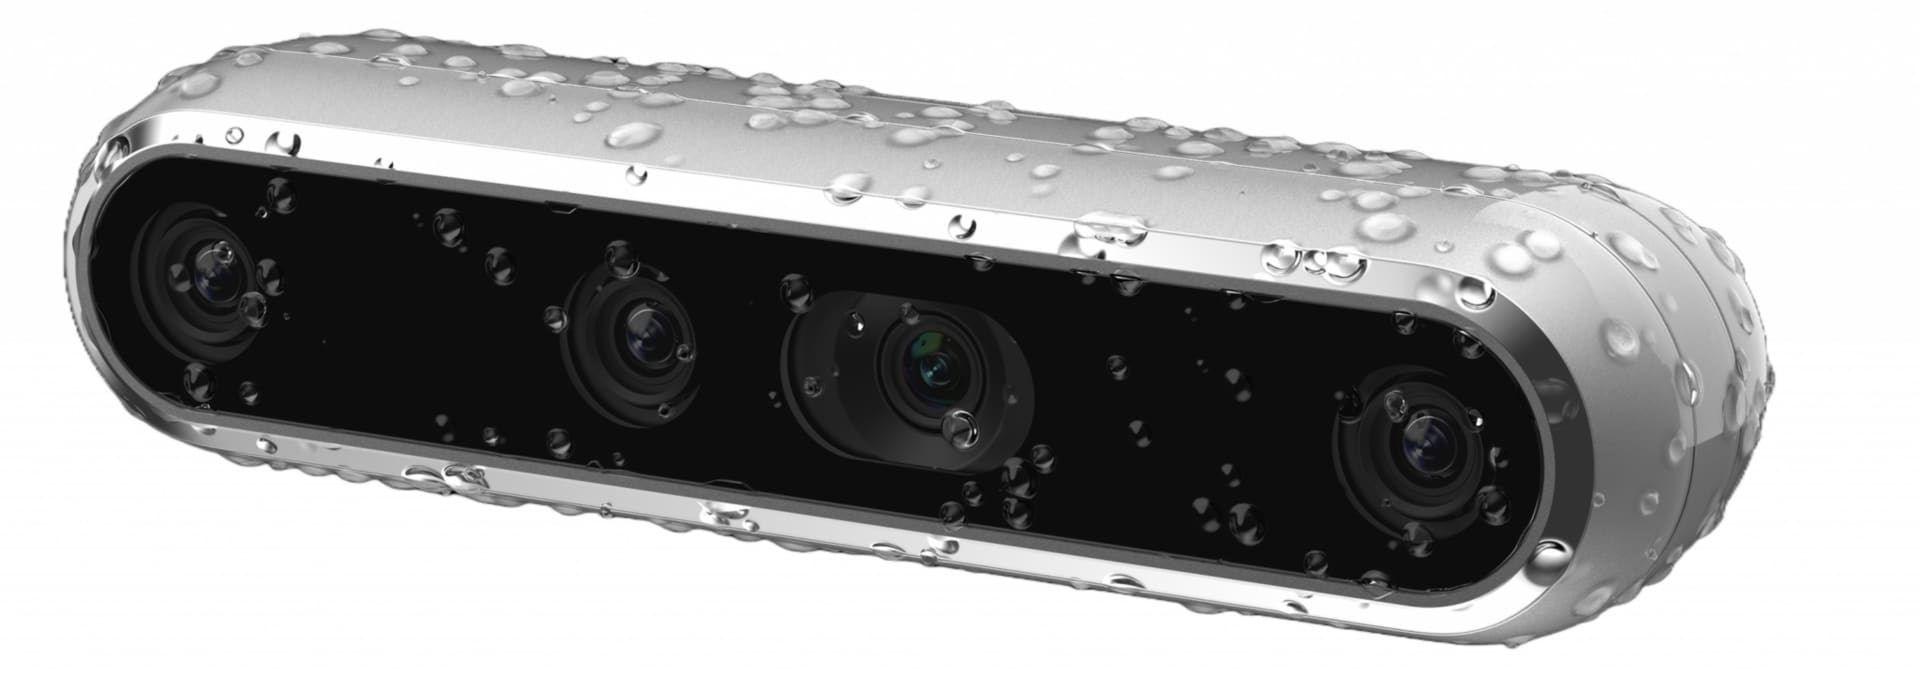 Intel RealSense D457 Depth Camera - 82635DSD457 - Webcams - CDW.com